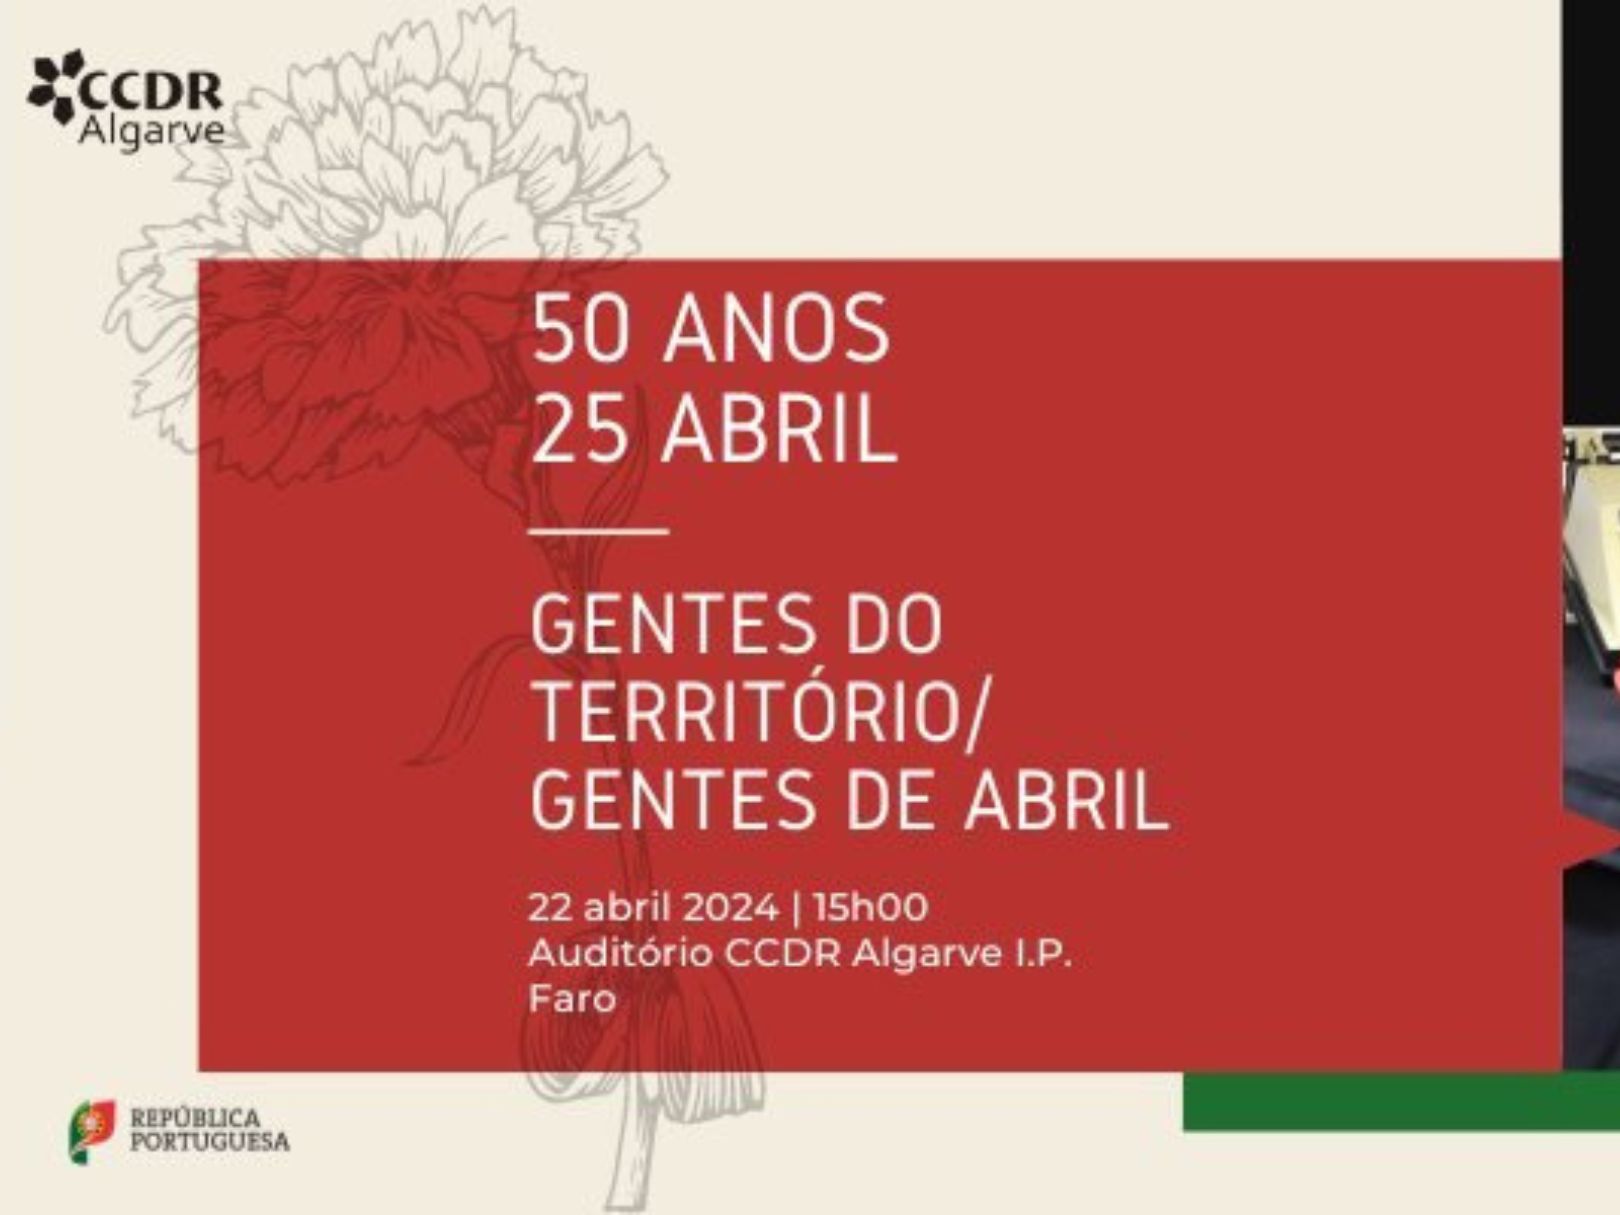 CIAC une-se a iniciativa Gentes do Território, Gentes de Abril da CCDR Algarve